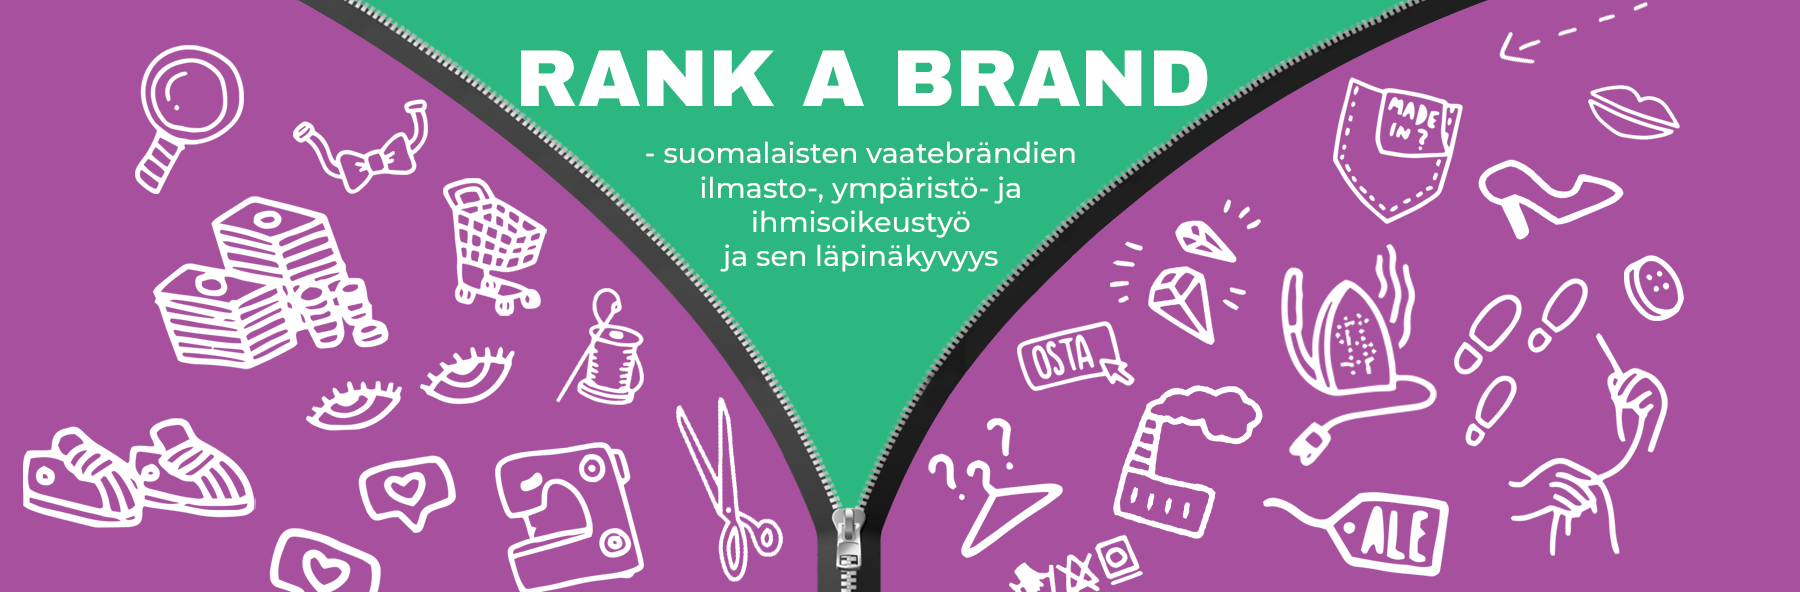 Moni suomalainen vaateyritys petrasi Ränkkää brändi vastuullisuusvertailussa